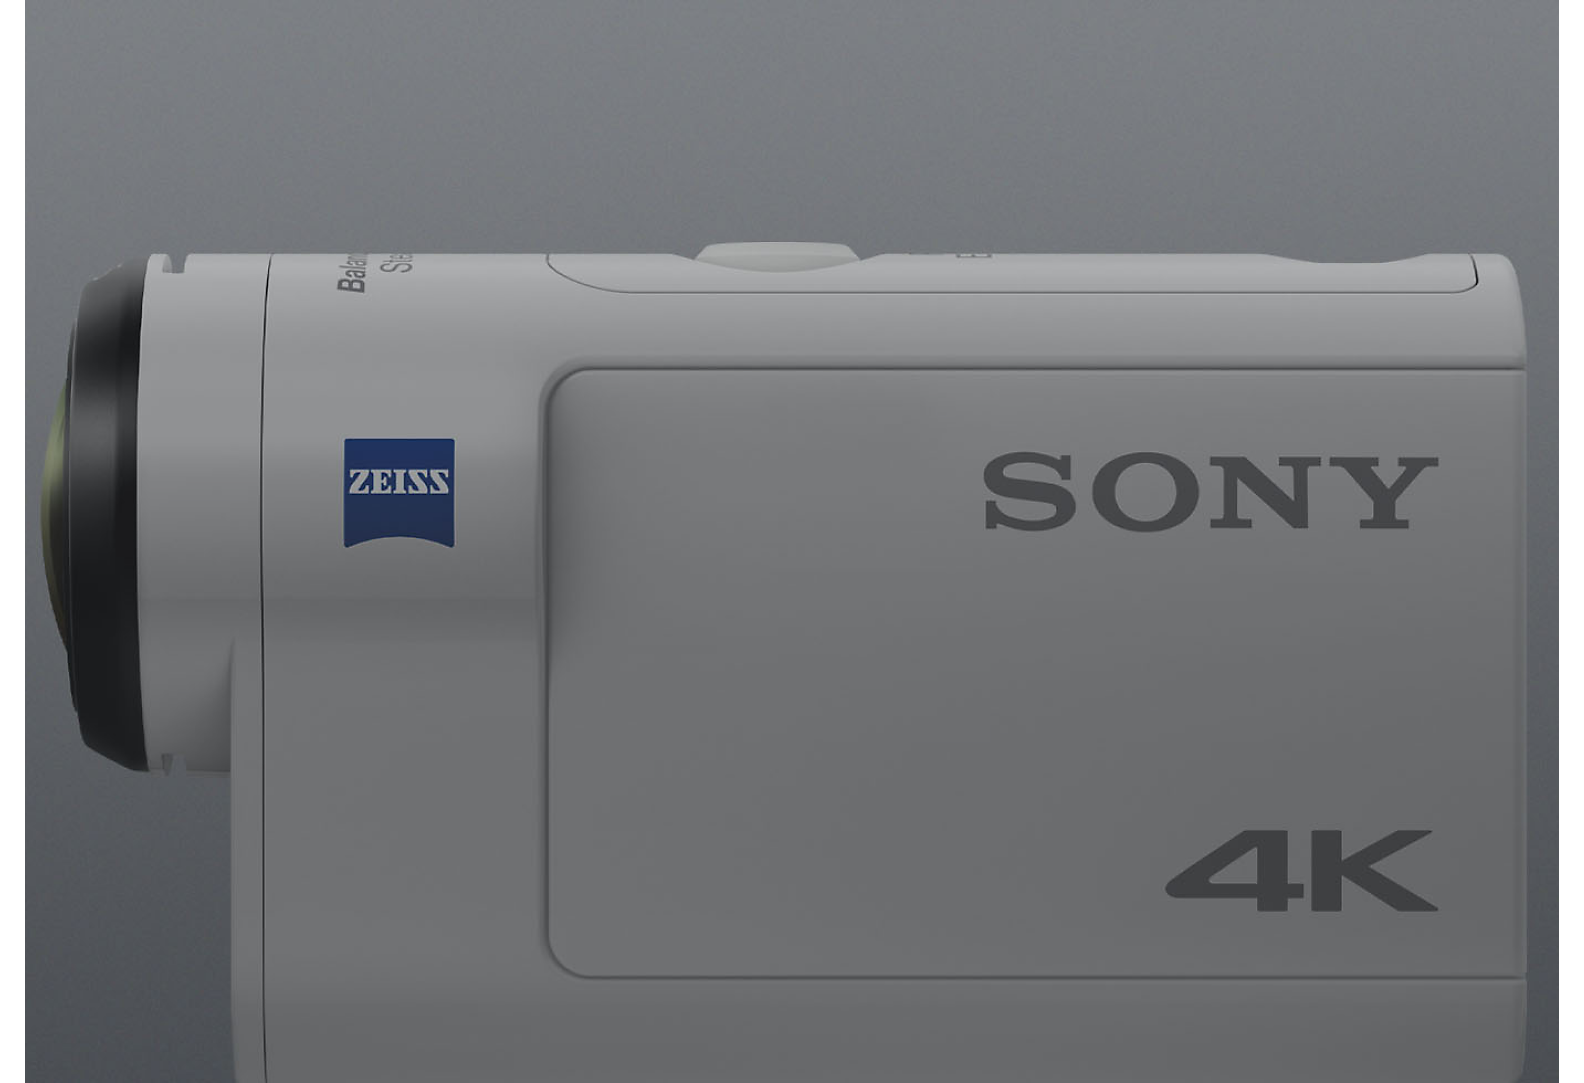 Vista lateral da Action Cam 4K da Sony